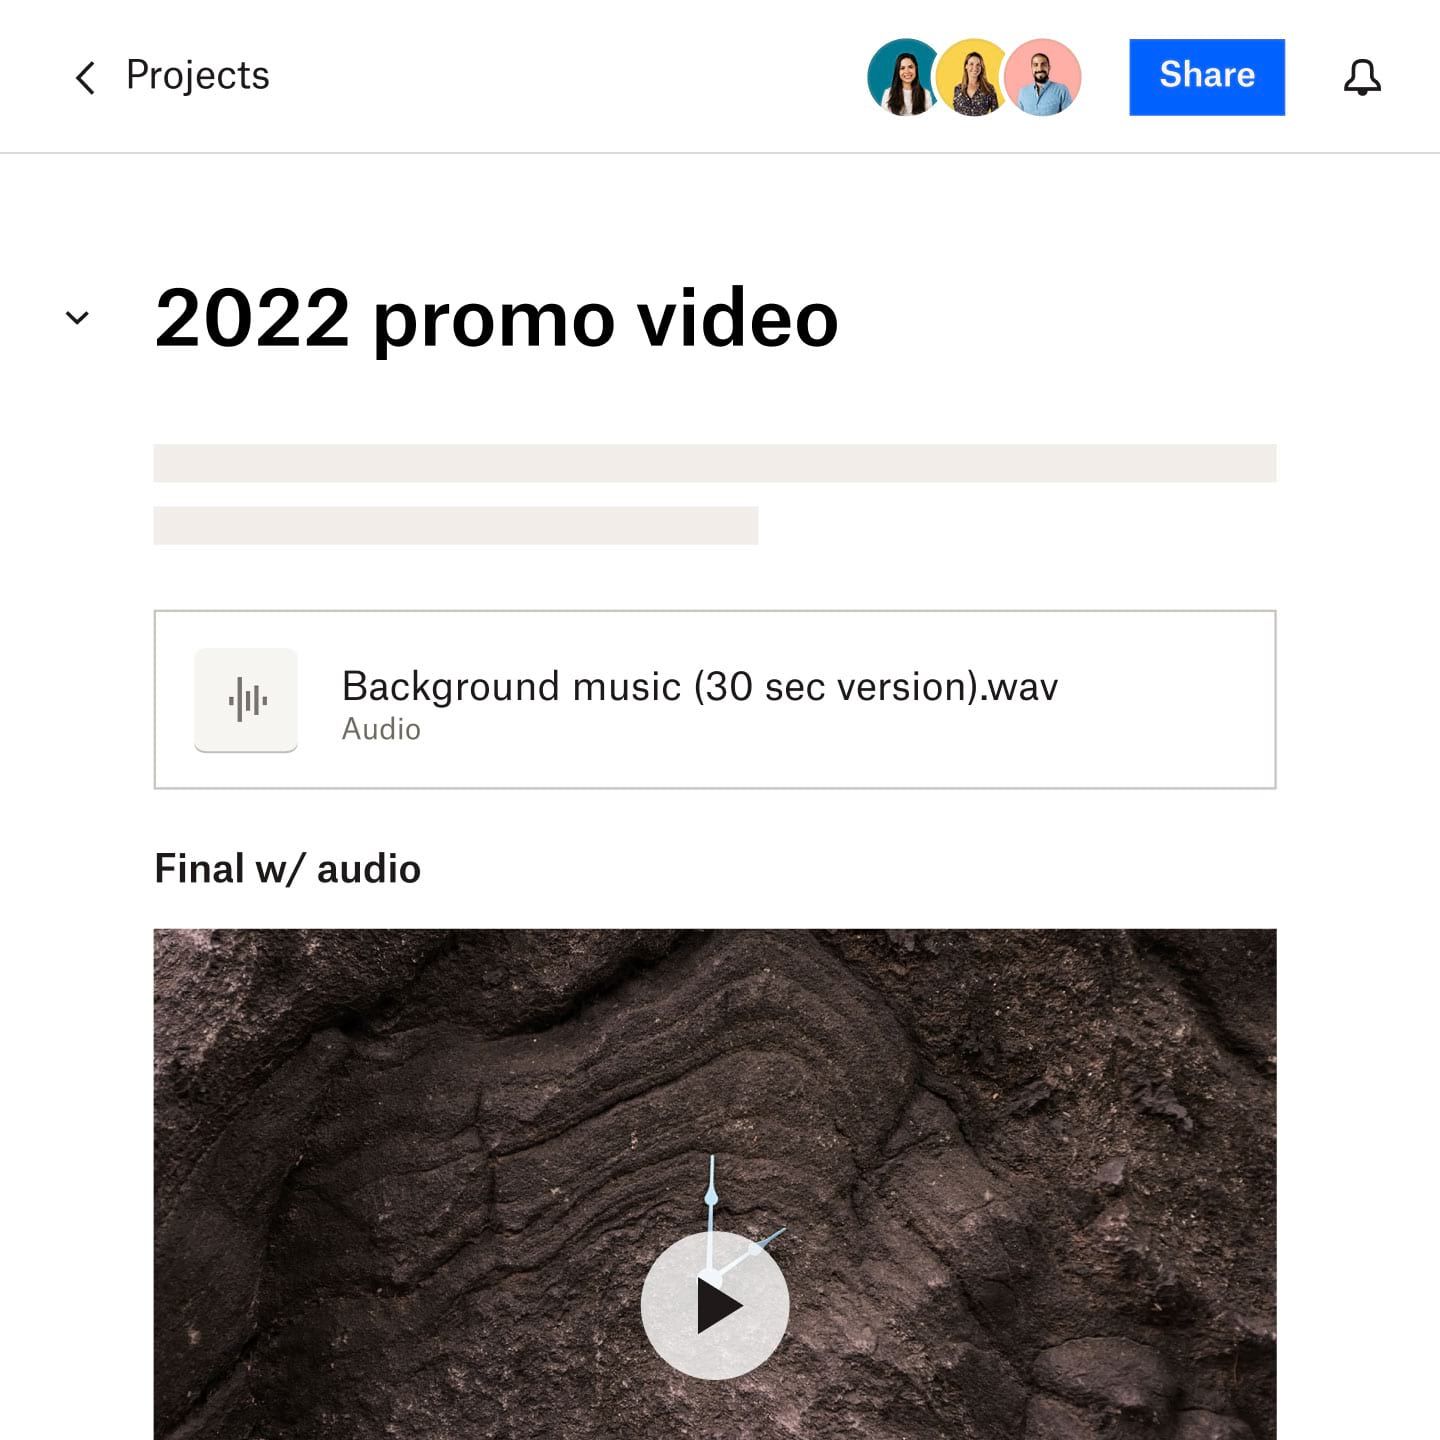 標題為「2022 宣傳影片」的 Dropbox Paper 文件、影片中使用音訊檔案的連結，以及完整影片的部分螢幕截圖